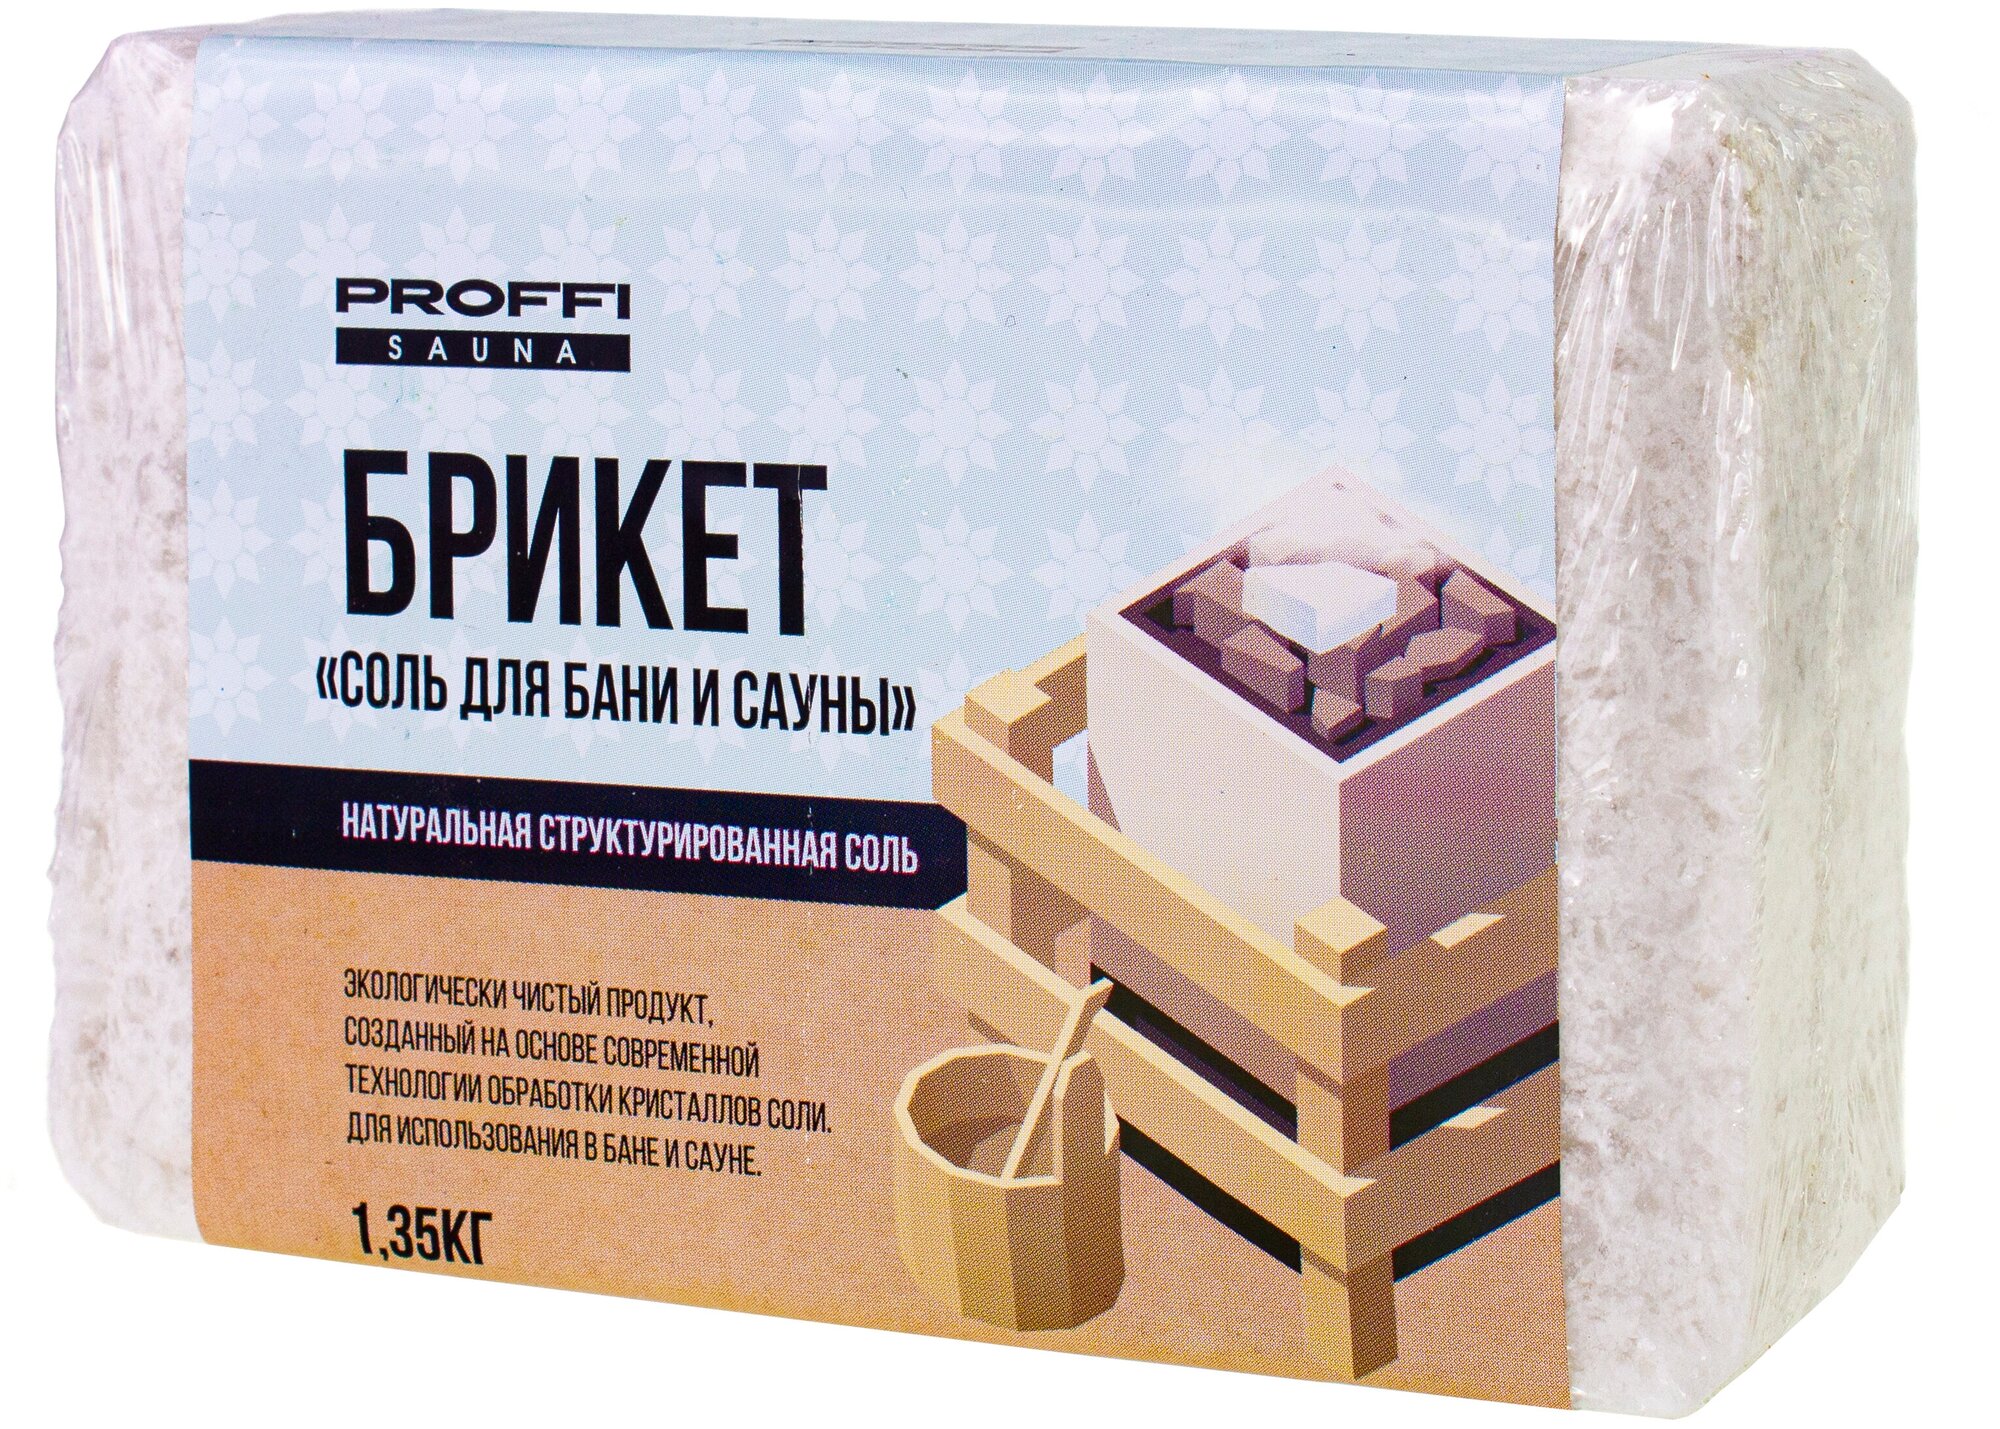 Морская соль для бани и сауны PROFFI PS0543 брикет 1.35кг